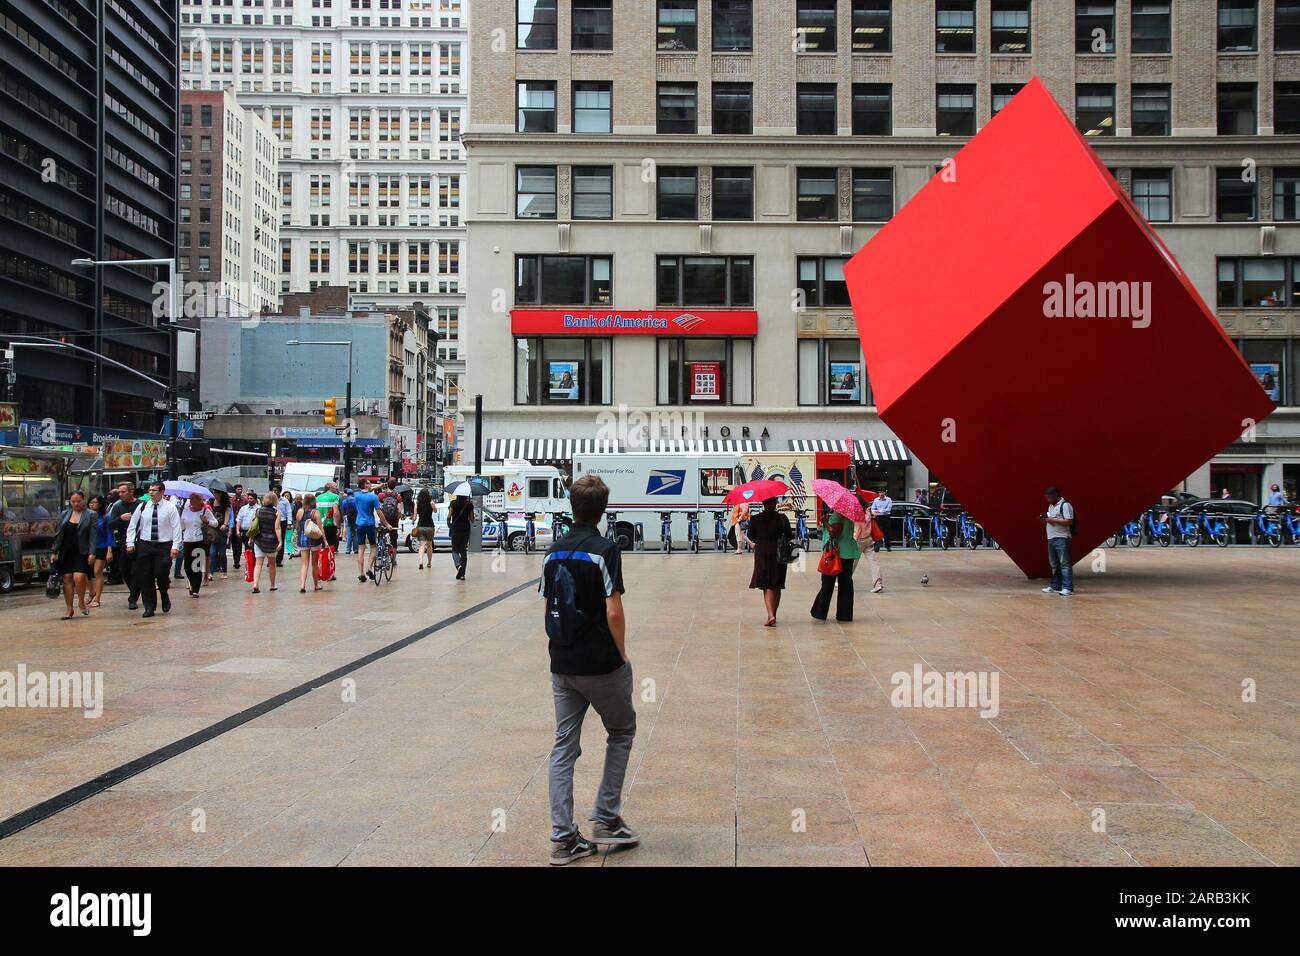 NEW YORK, Stati Uniti d'America - 2 Luglio 2, 2013: la gente a piedi sotto il cubo rosso arte pubblica a New York. L'artwork da Isamu Noguchi risale al 1968. Foto Stock